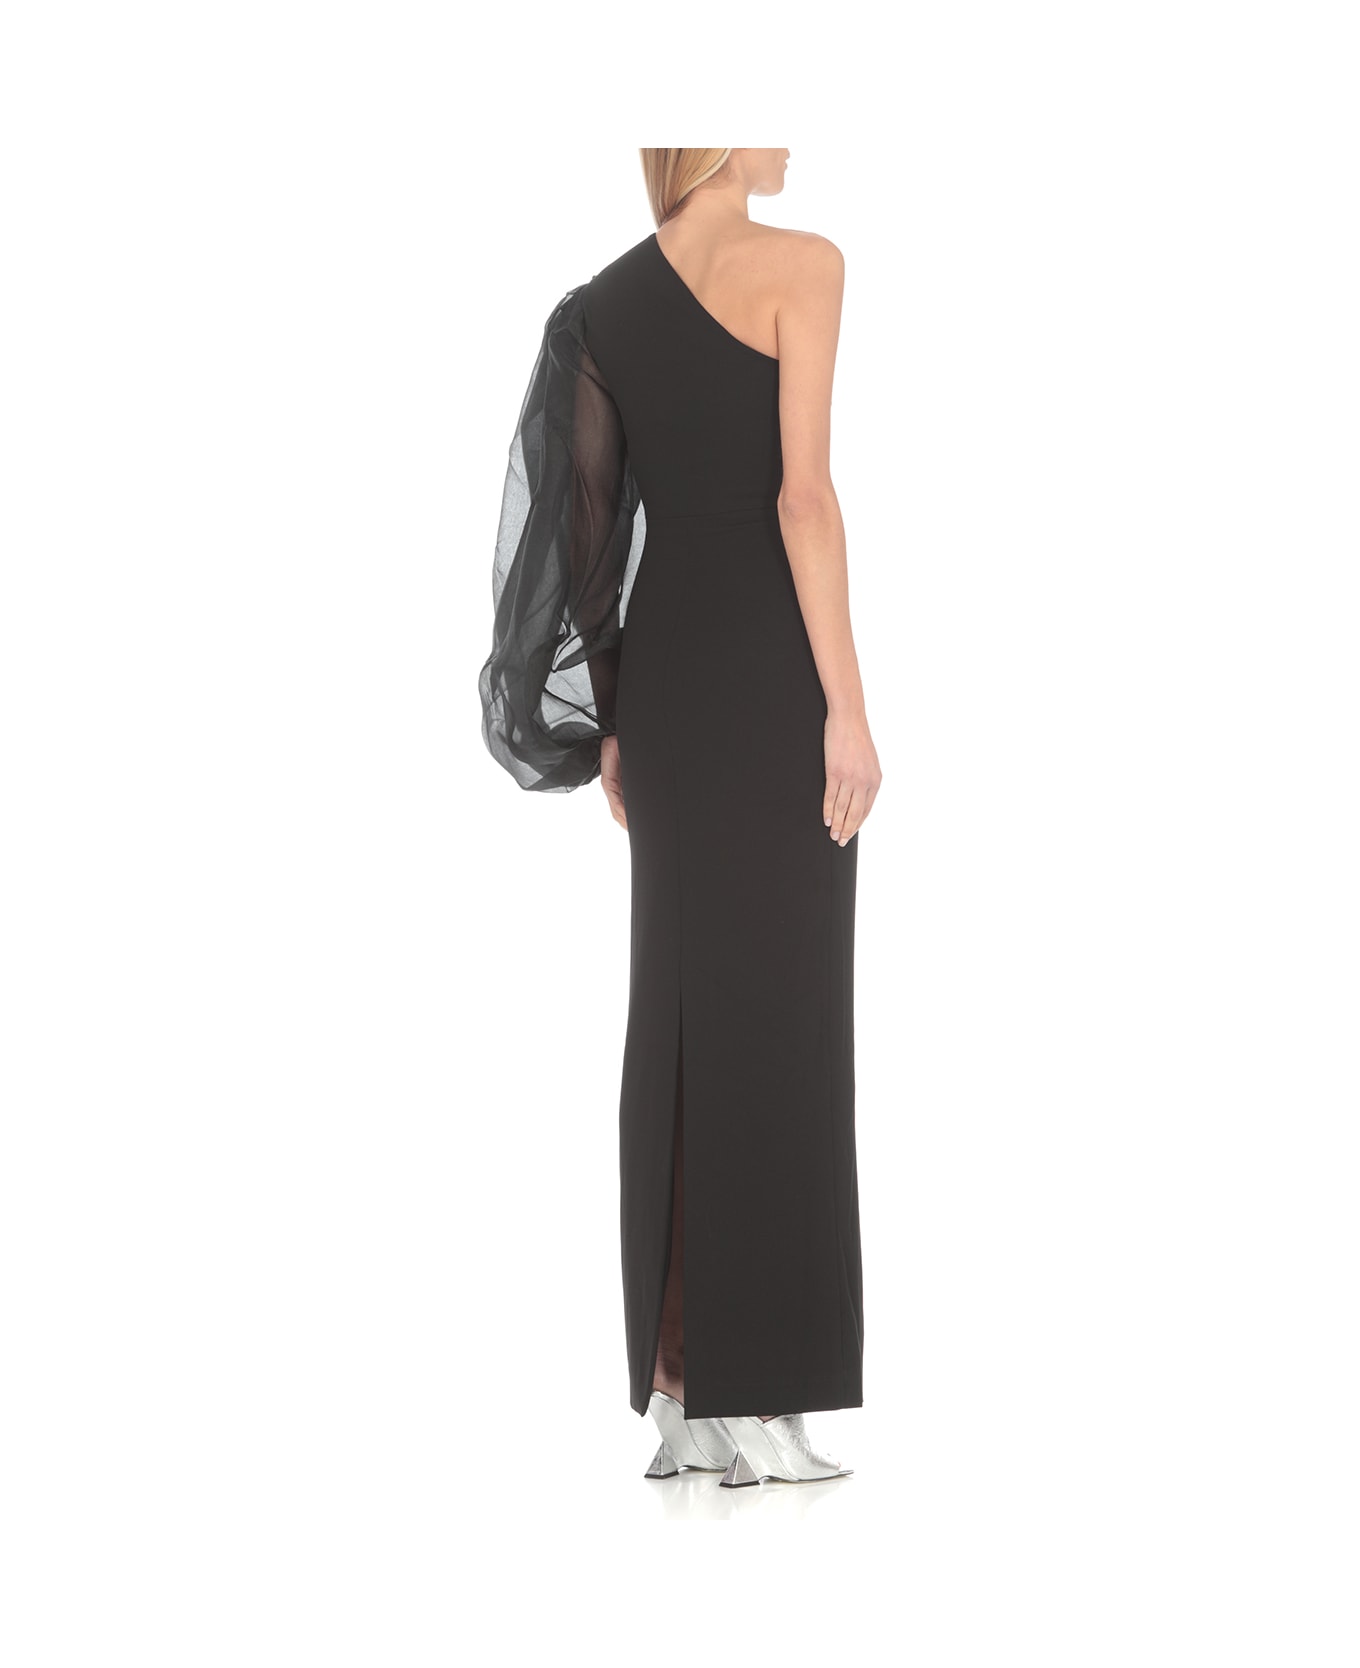 Solace London Hudson Maxi Dress - Black